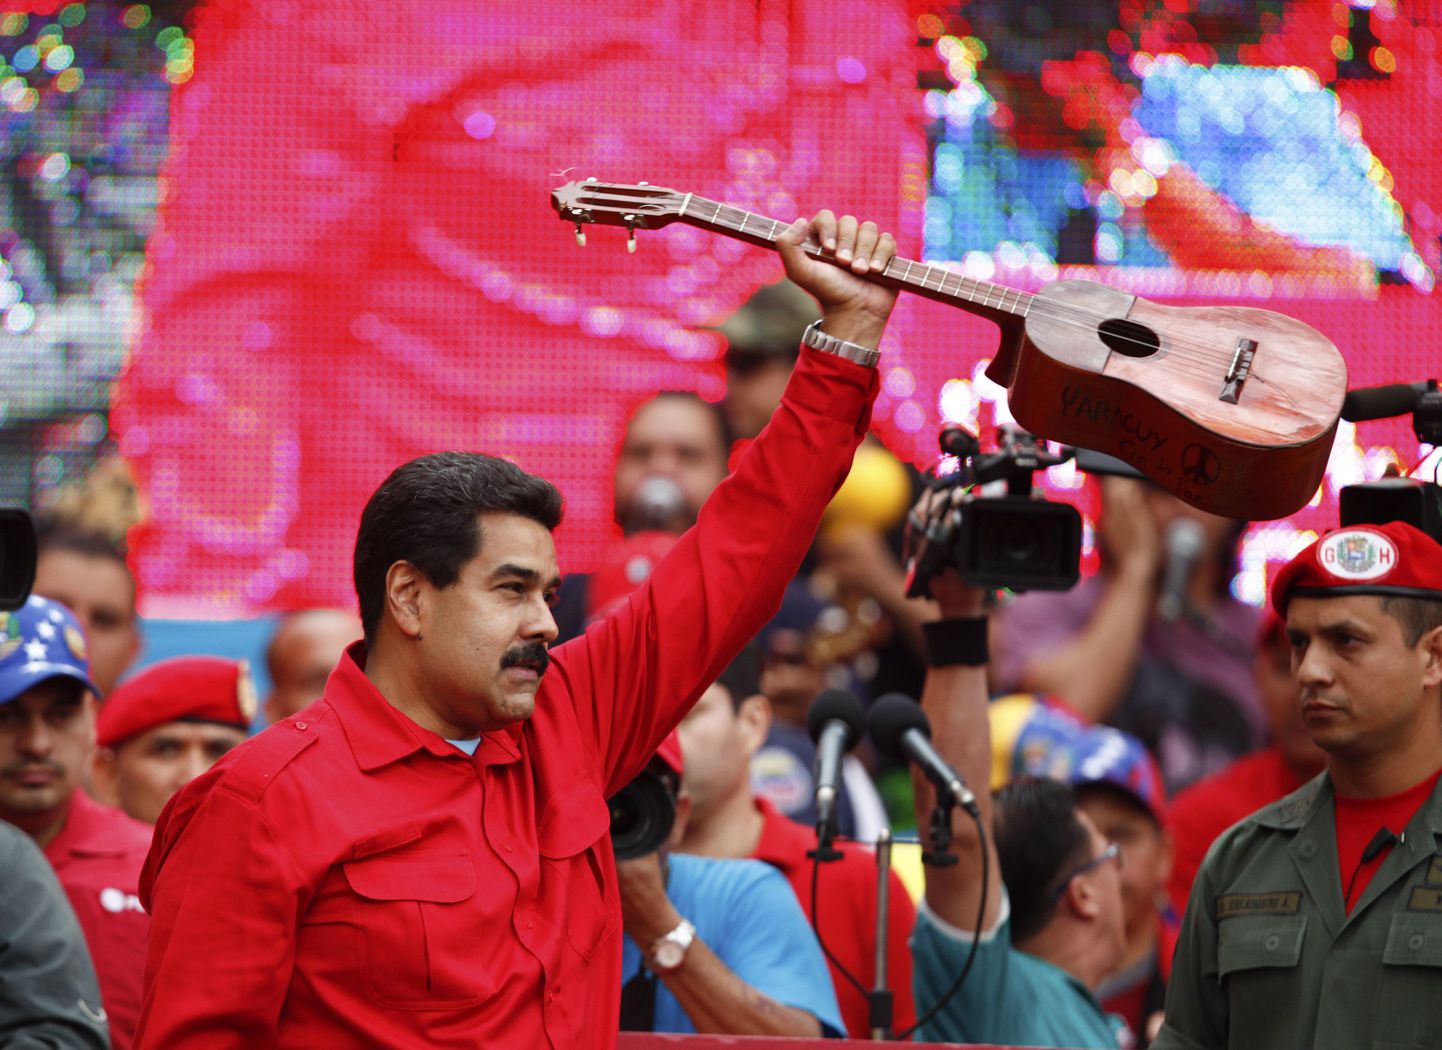 Nicolas Maduro, Hugo Chavezi järglane Venezuela presidendi ametipostil veebruaris rahvale kõnet pidamas. Aasta alguses Venetsueelat vapustanud poliitilistes rahutustes kaotas elu paarkümmend inimest. Lisaks kimbutab riiki hüperinflatsioon. The Economisti uuringukeskuse EIU hinnangul on ent Venezuela Eestiga võrdväärse elukvaliteediga riik.